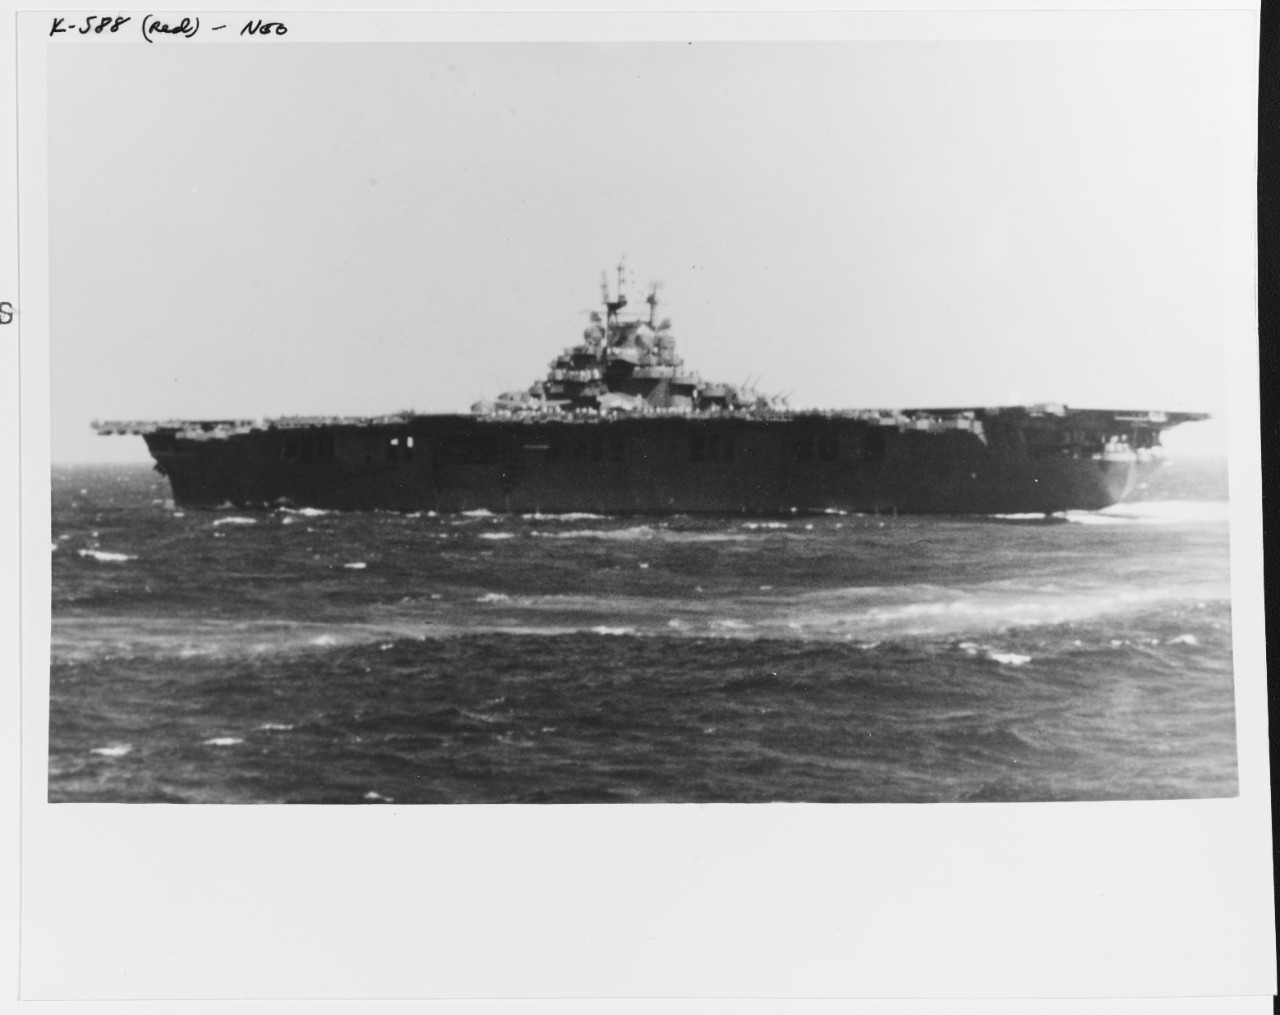 USS ESSEX (CV-9)